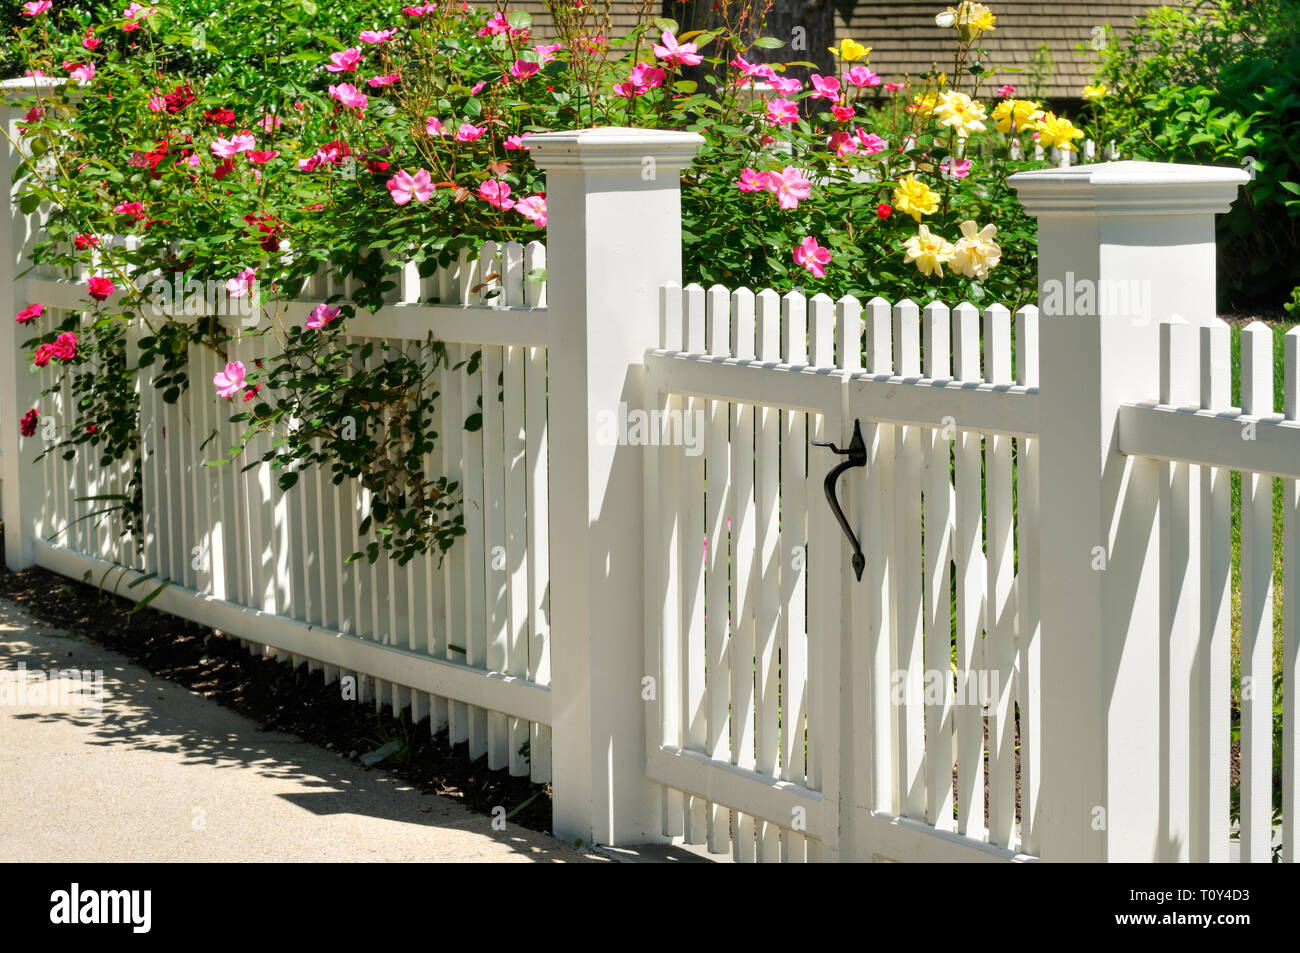 Portail blanc, d'une clôture et de rosiers grimpants. Accueil entrée, esthétique Banque D'Images